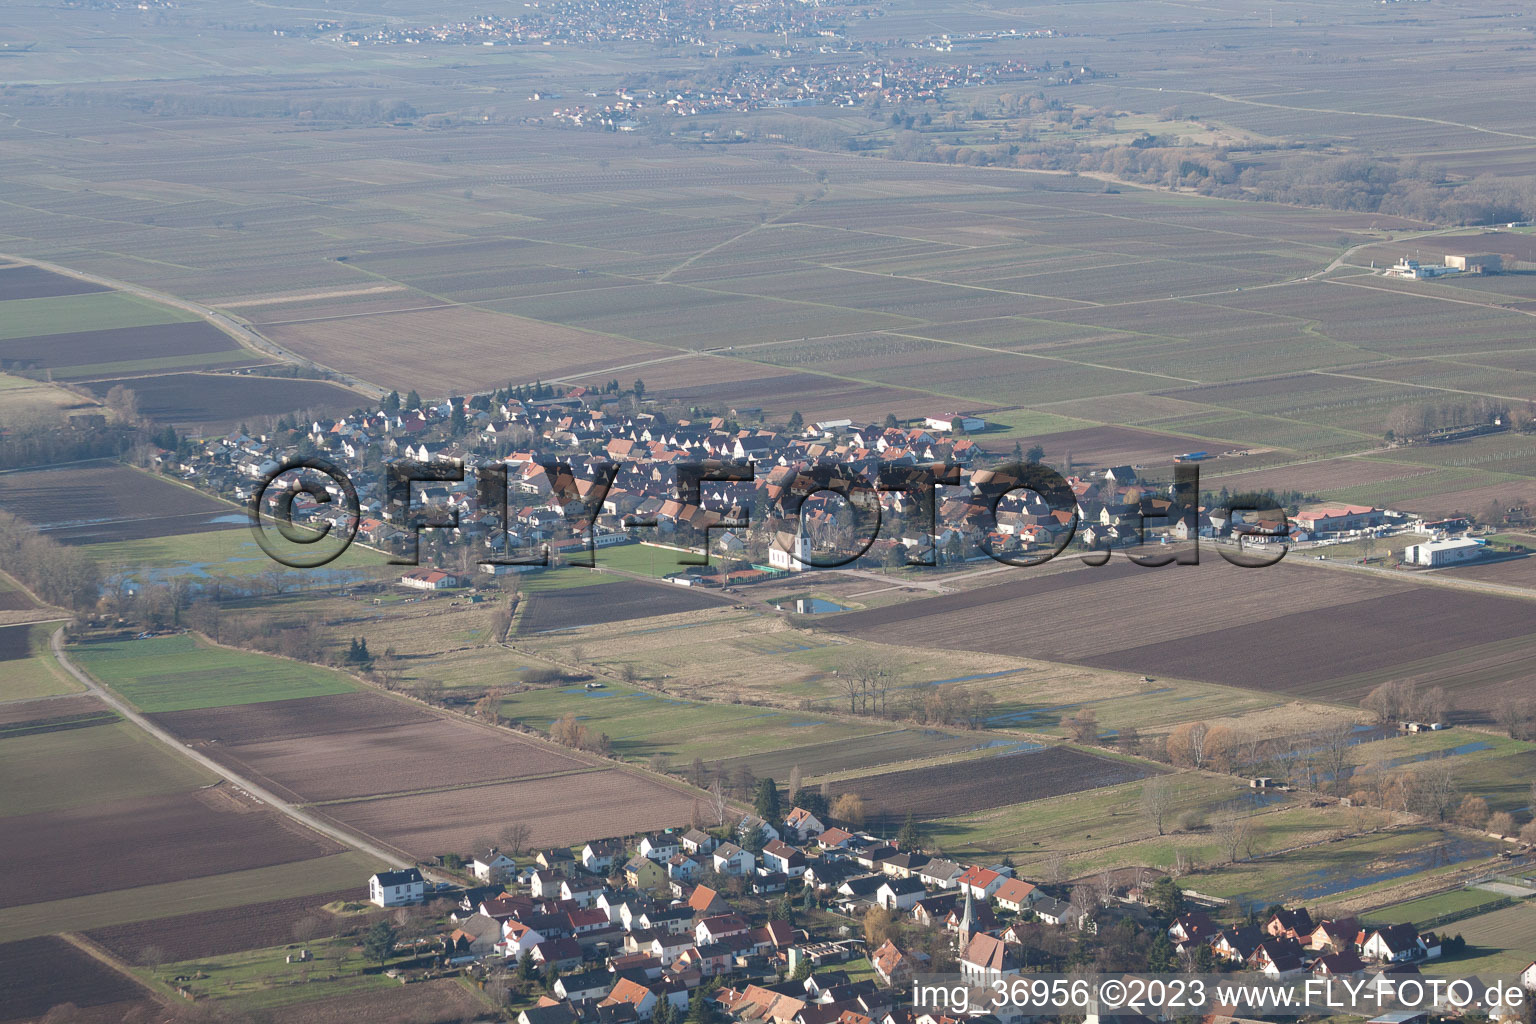 Altdorf im Bundesland Rheinland-Pfalz, Deutschland von der Drohne aus gesehen